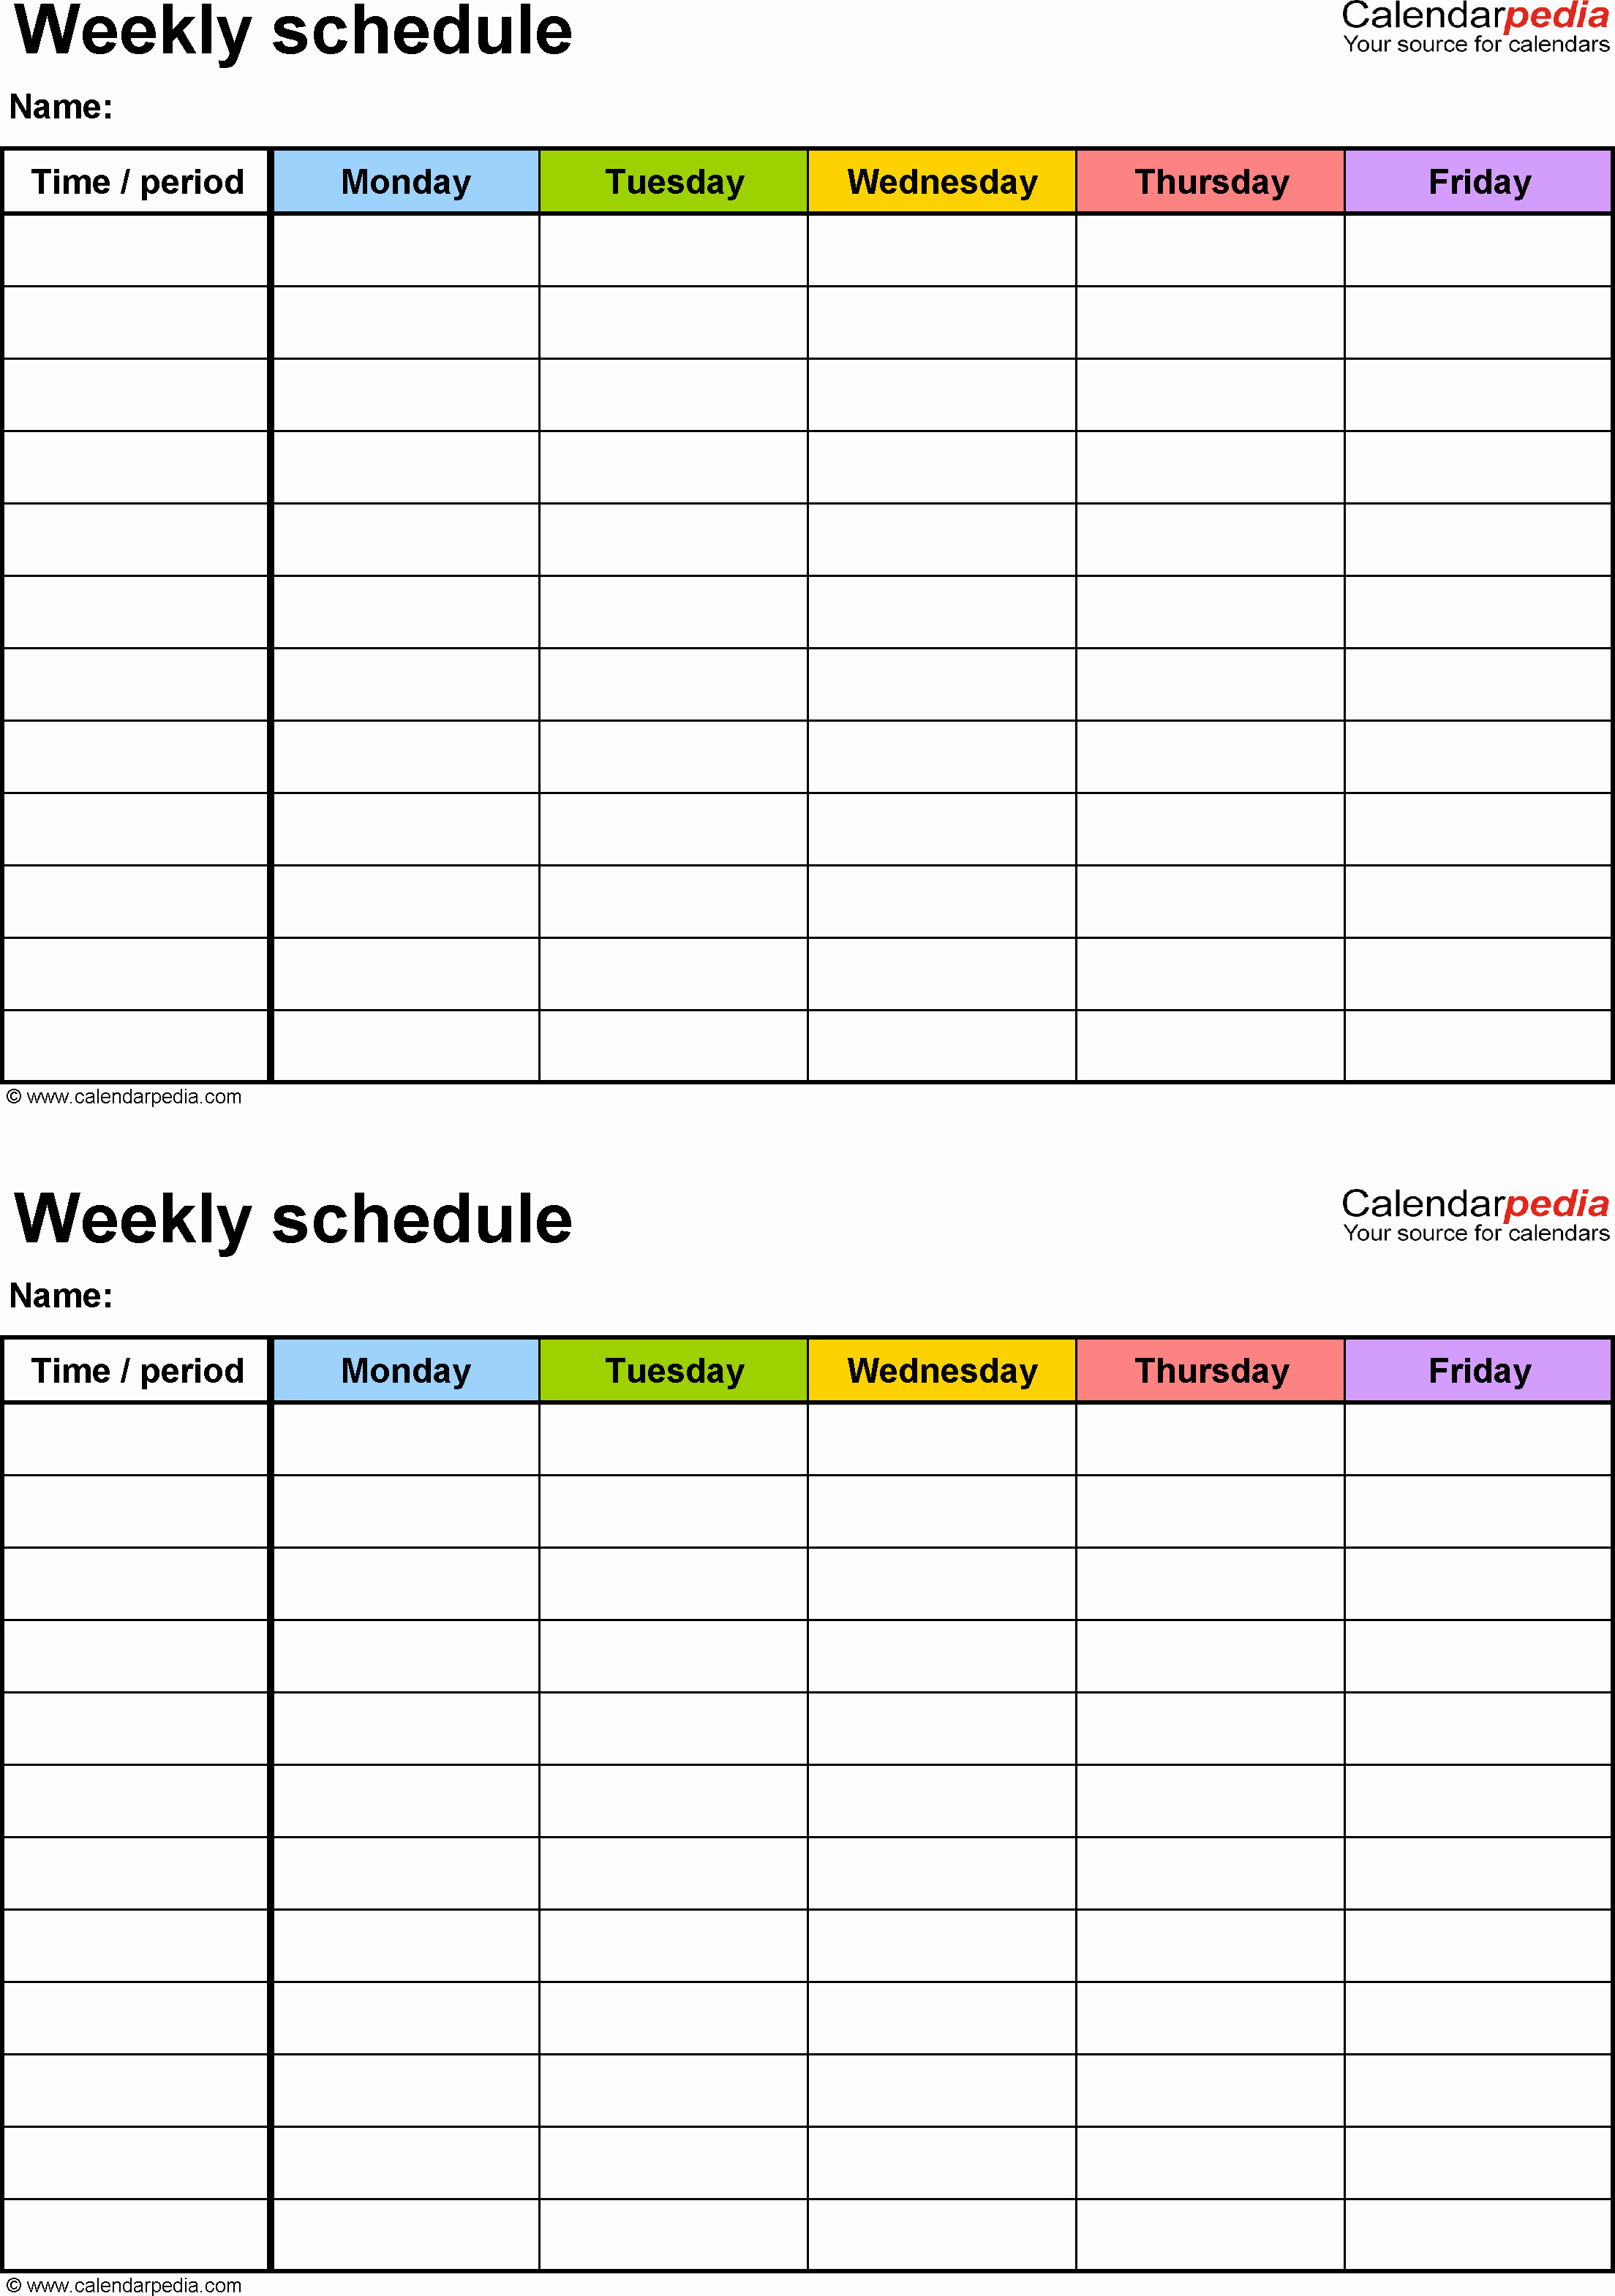 Weekly Schedule Template Pdf Elegant Free Weekly Schedule Templates for Pdf 18 Templates